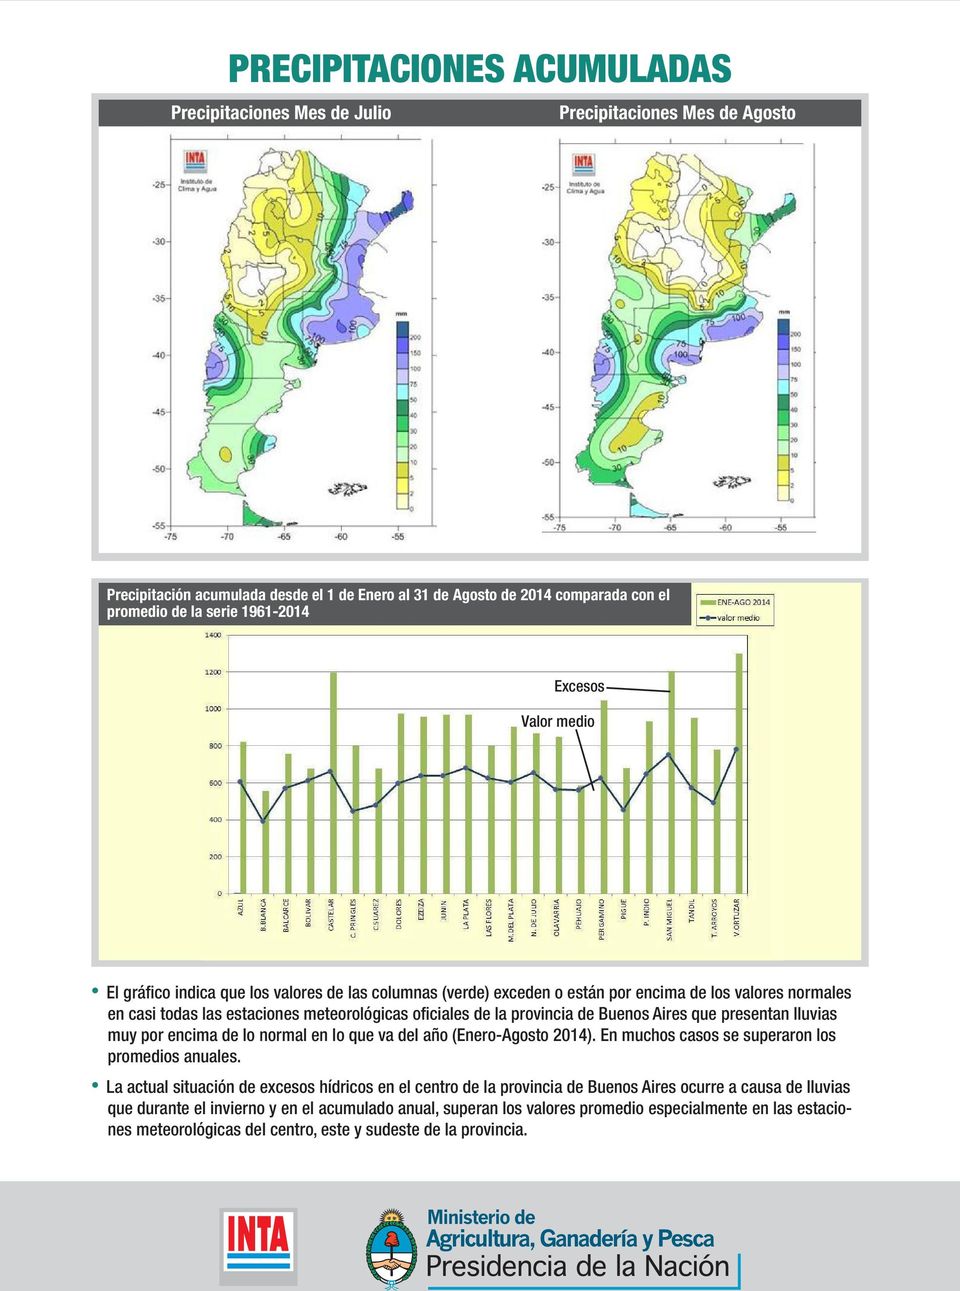 provincia de Buenos Aires que presentan lluvias muy por encima de lo normal en lo que va del año (Enero-Agosto 2014). En muchos casos se superaron los promedios anuales.